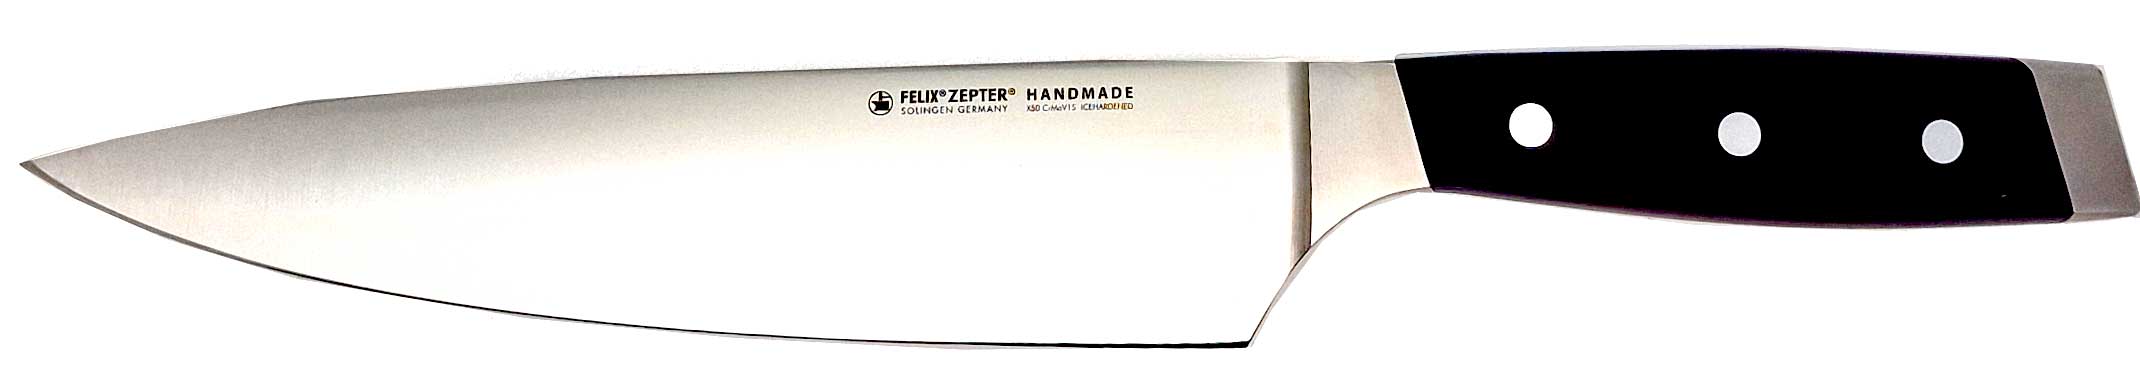 FELIX FIRST CLASS Kochmesser  21 cm